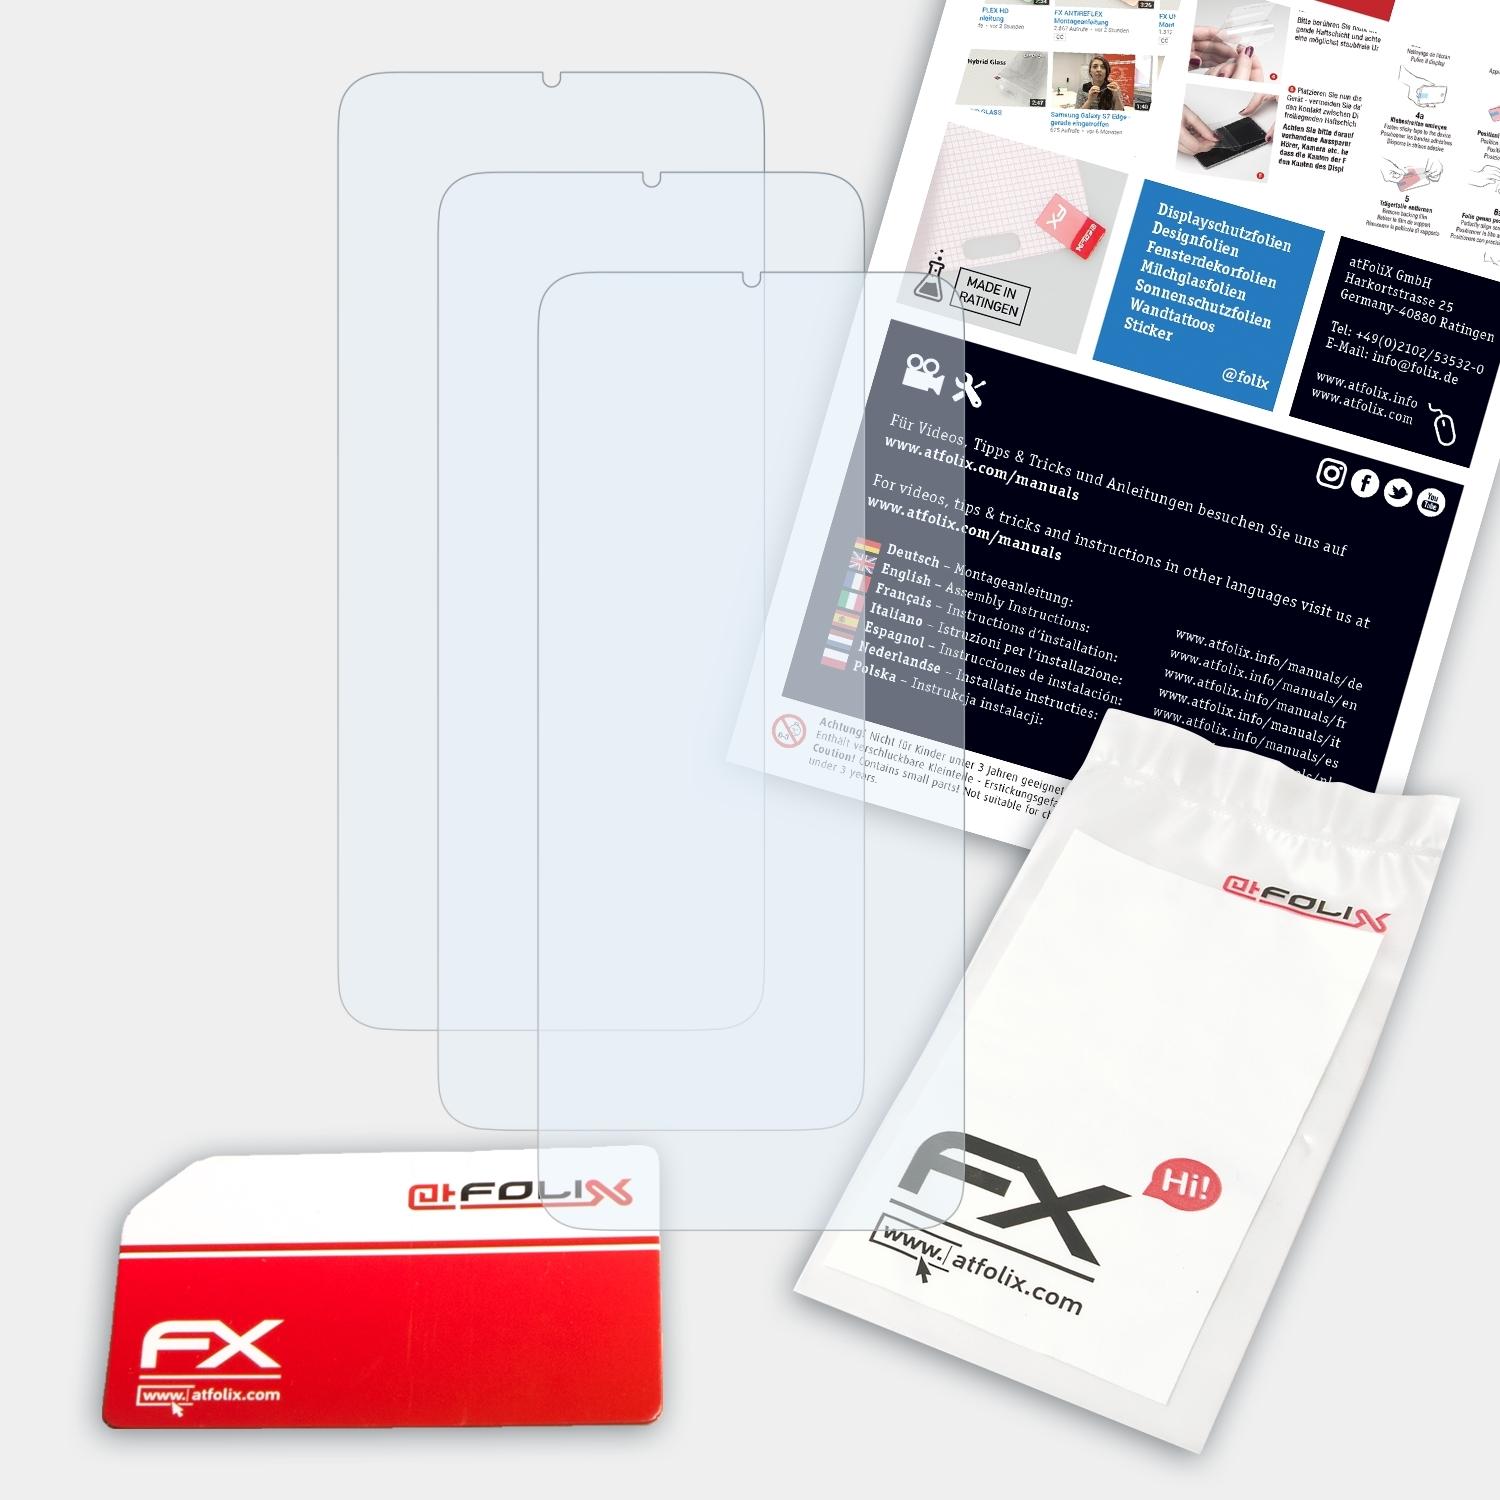 3x FX-Clear 9T) Xiaomi Redmi Displayschutz(für ATFOLIX